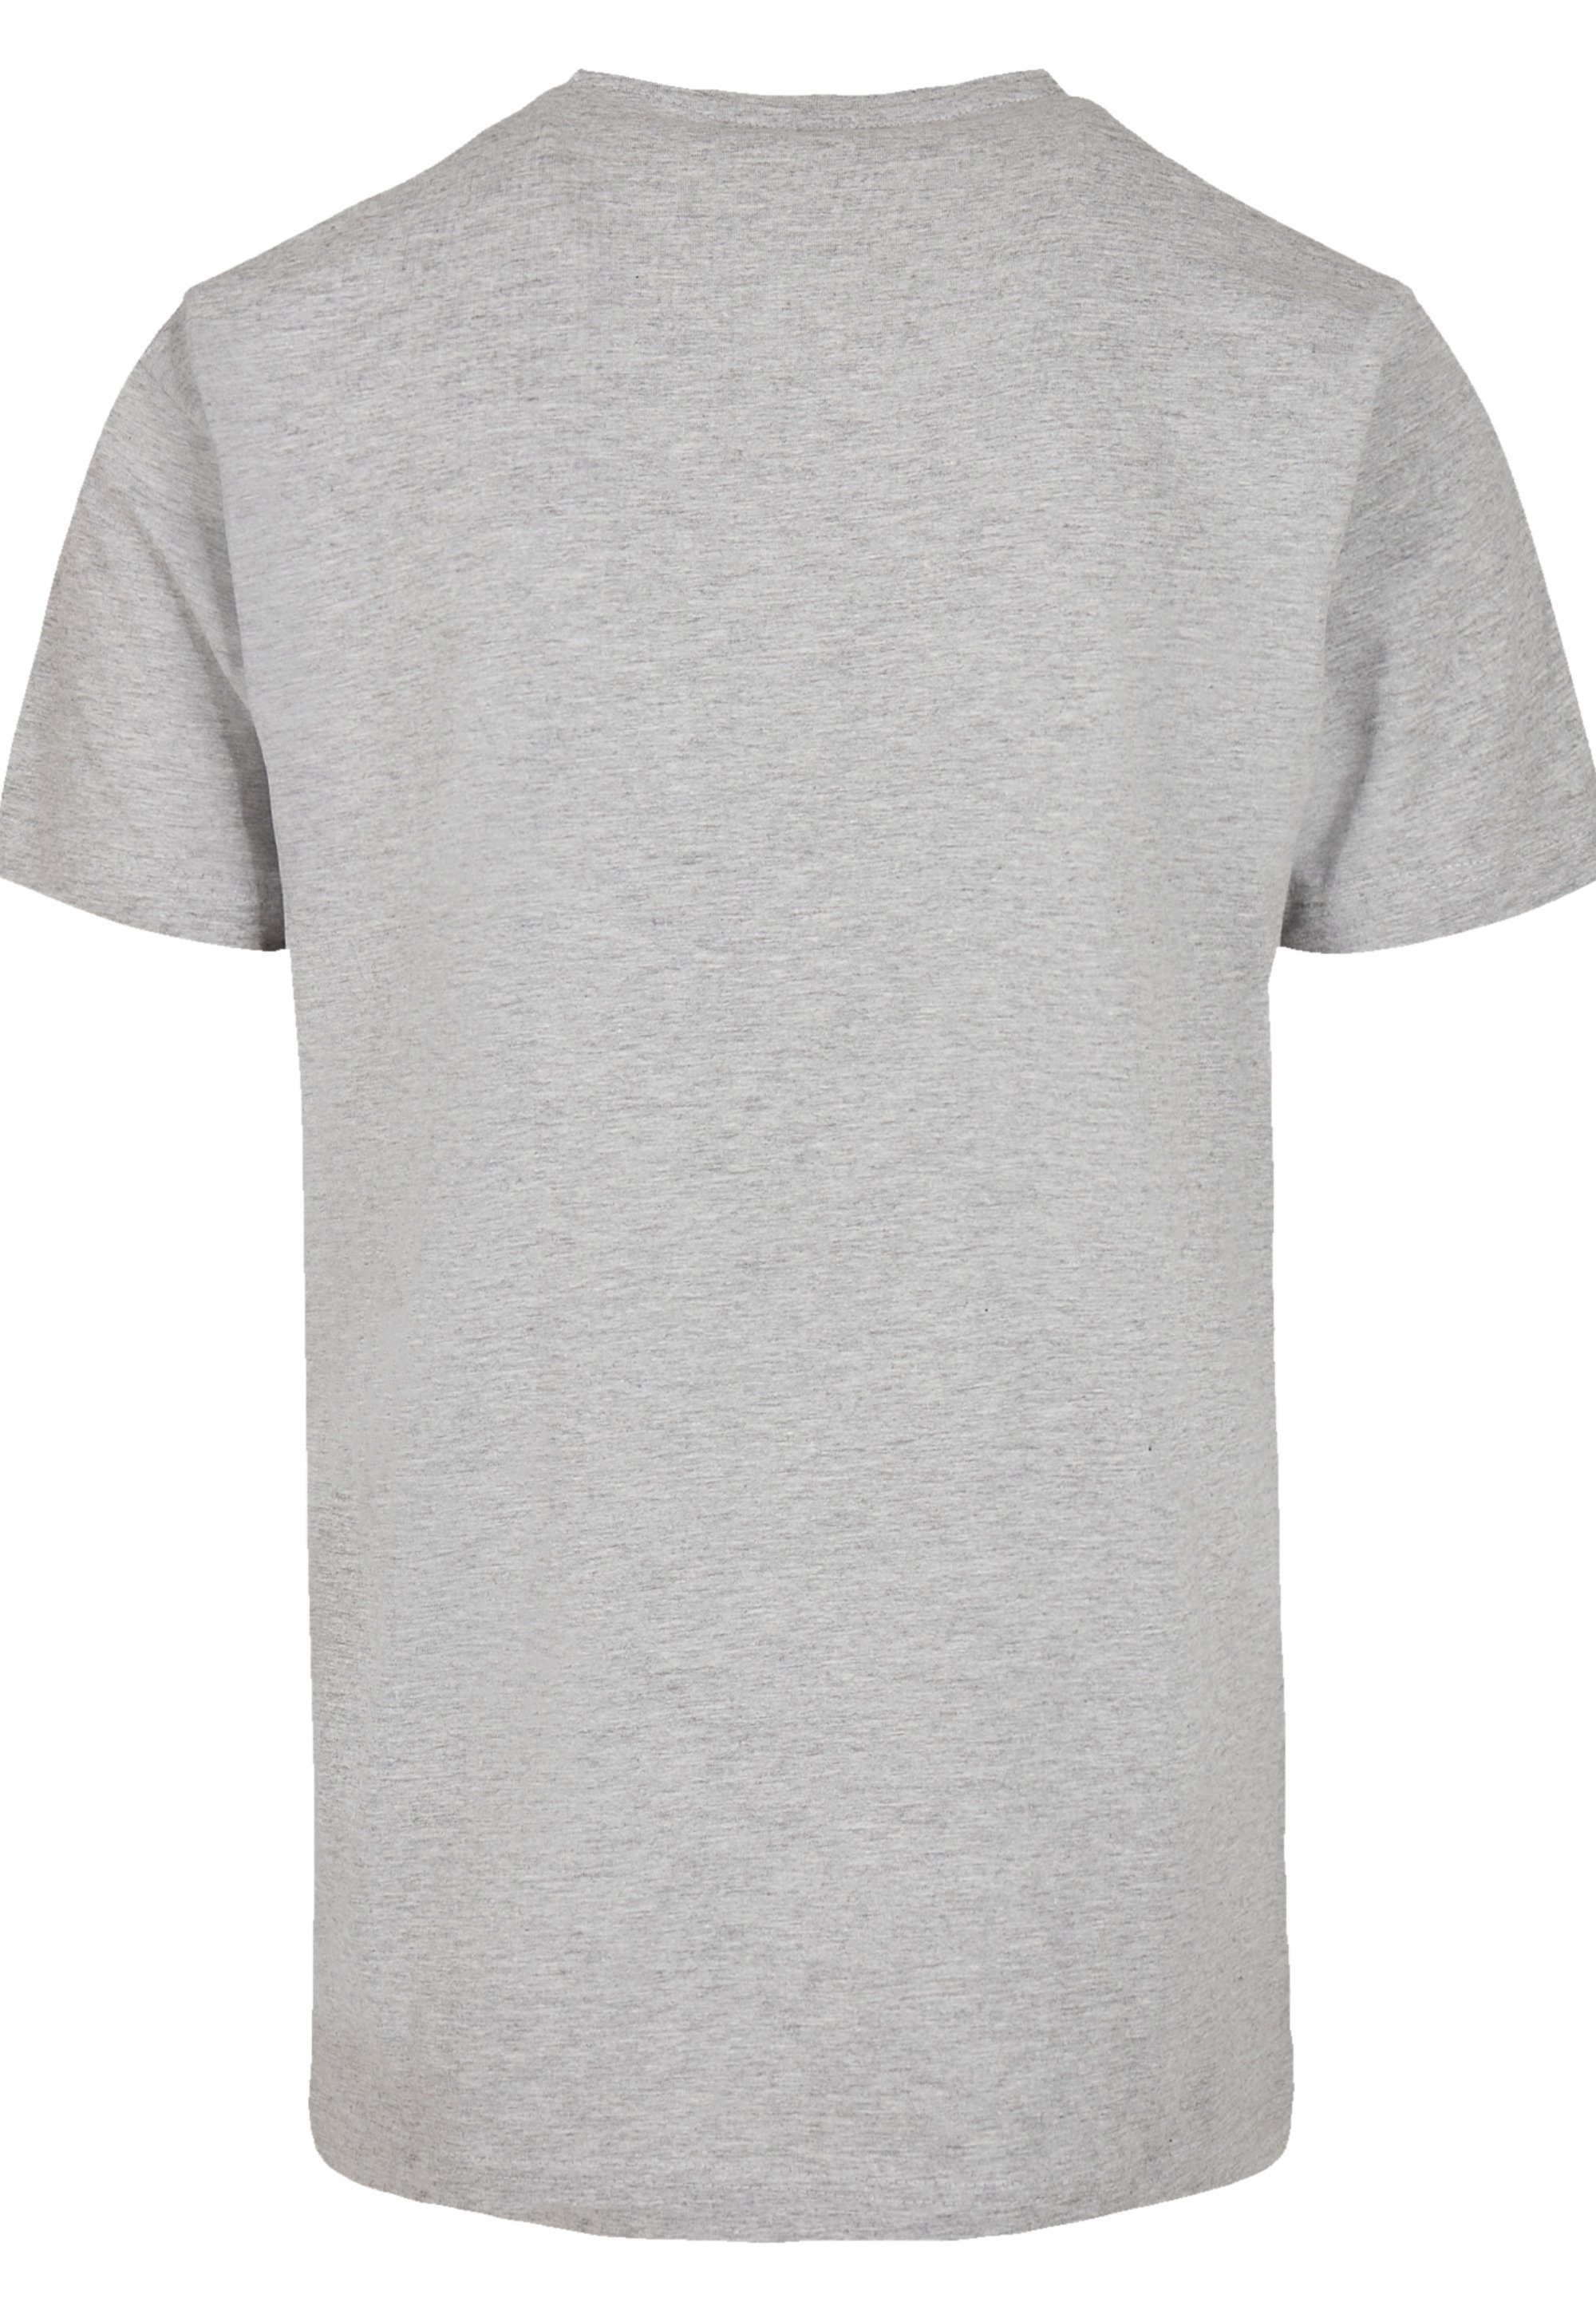 SCULPTURE F4NT4STIC grey T-Shirt BLAU heather Print